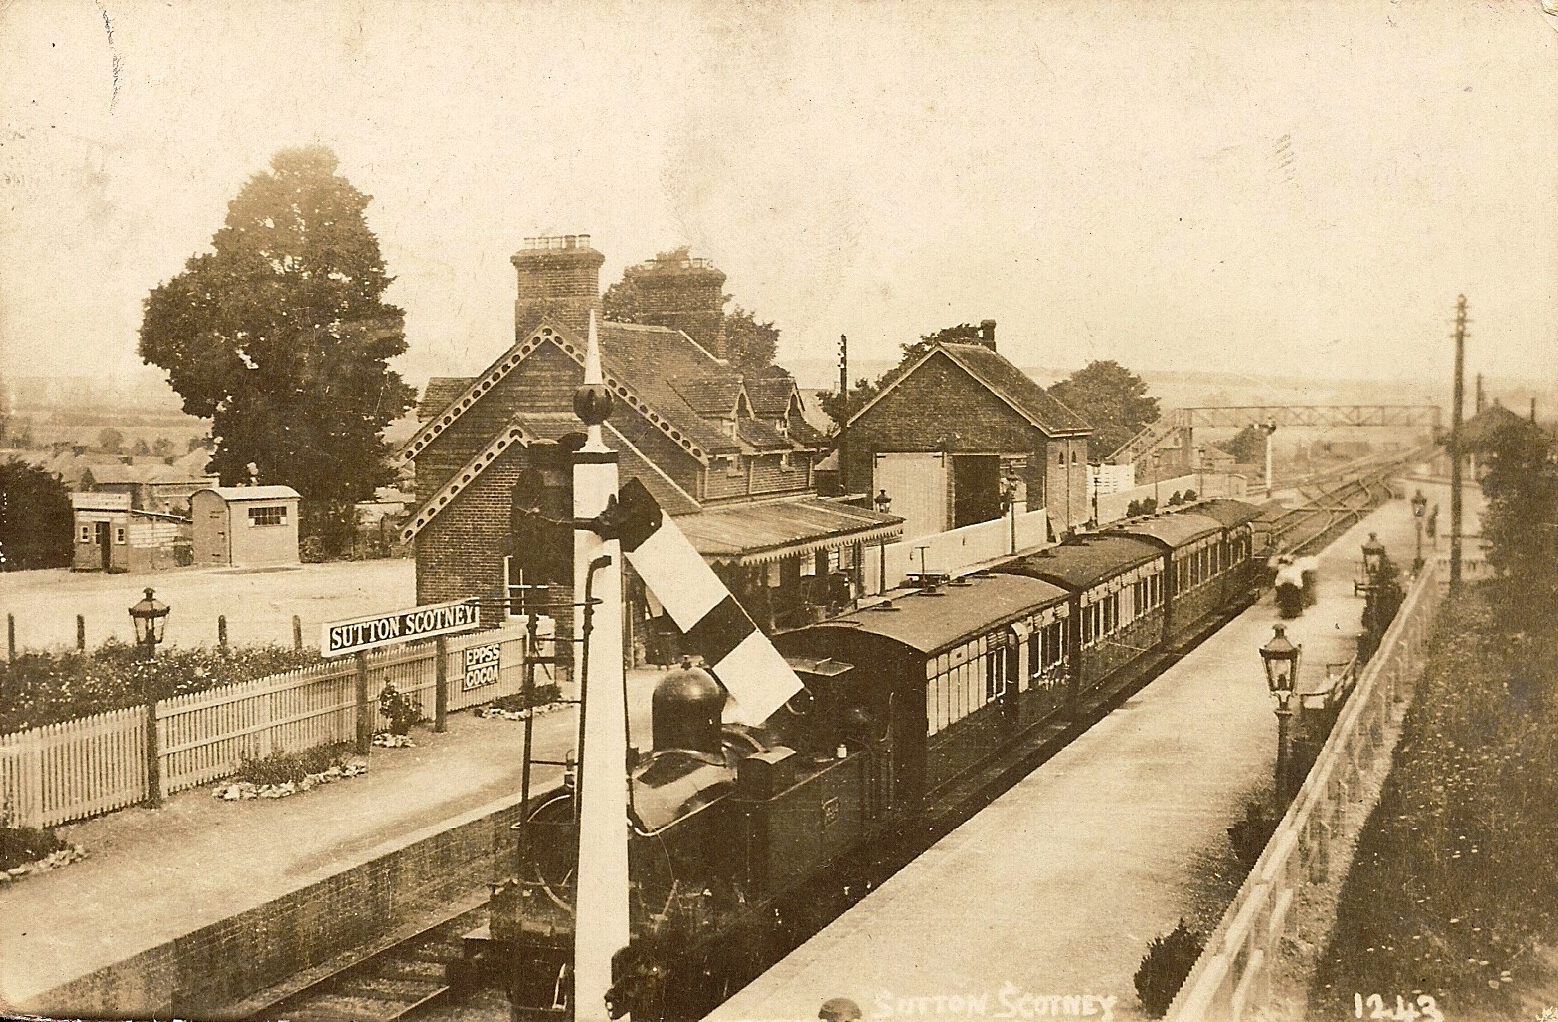 Sutton Scotney railway station